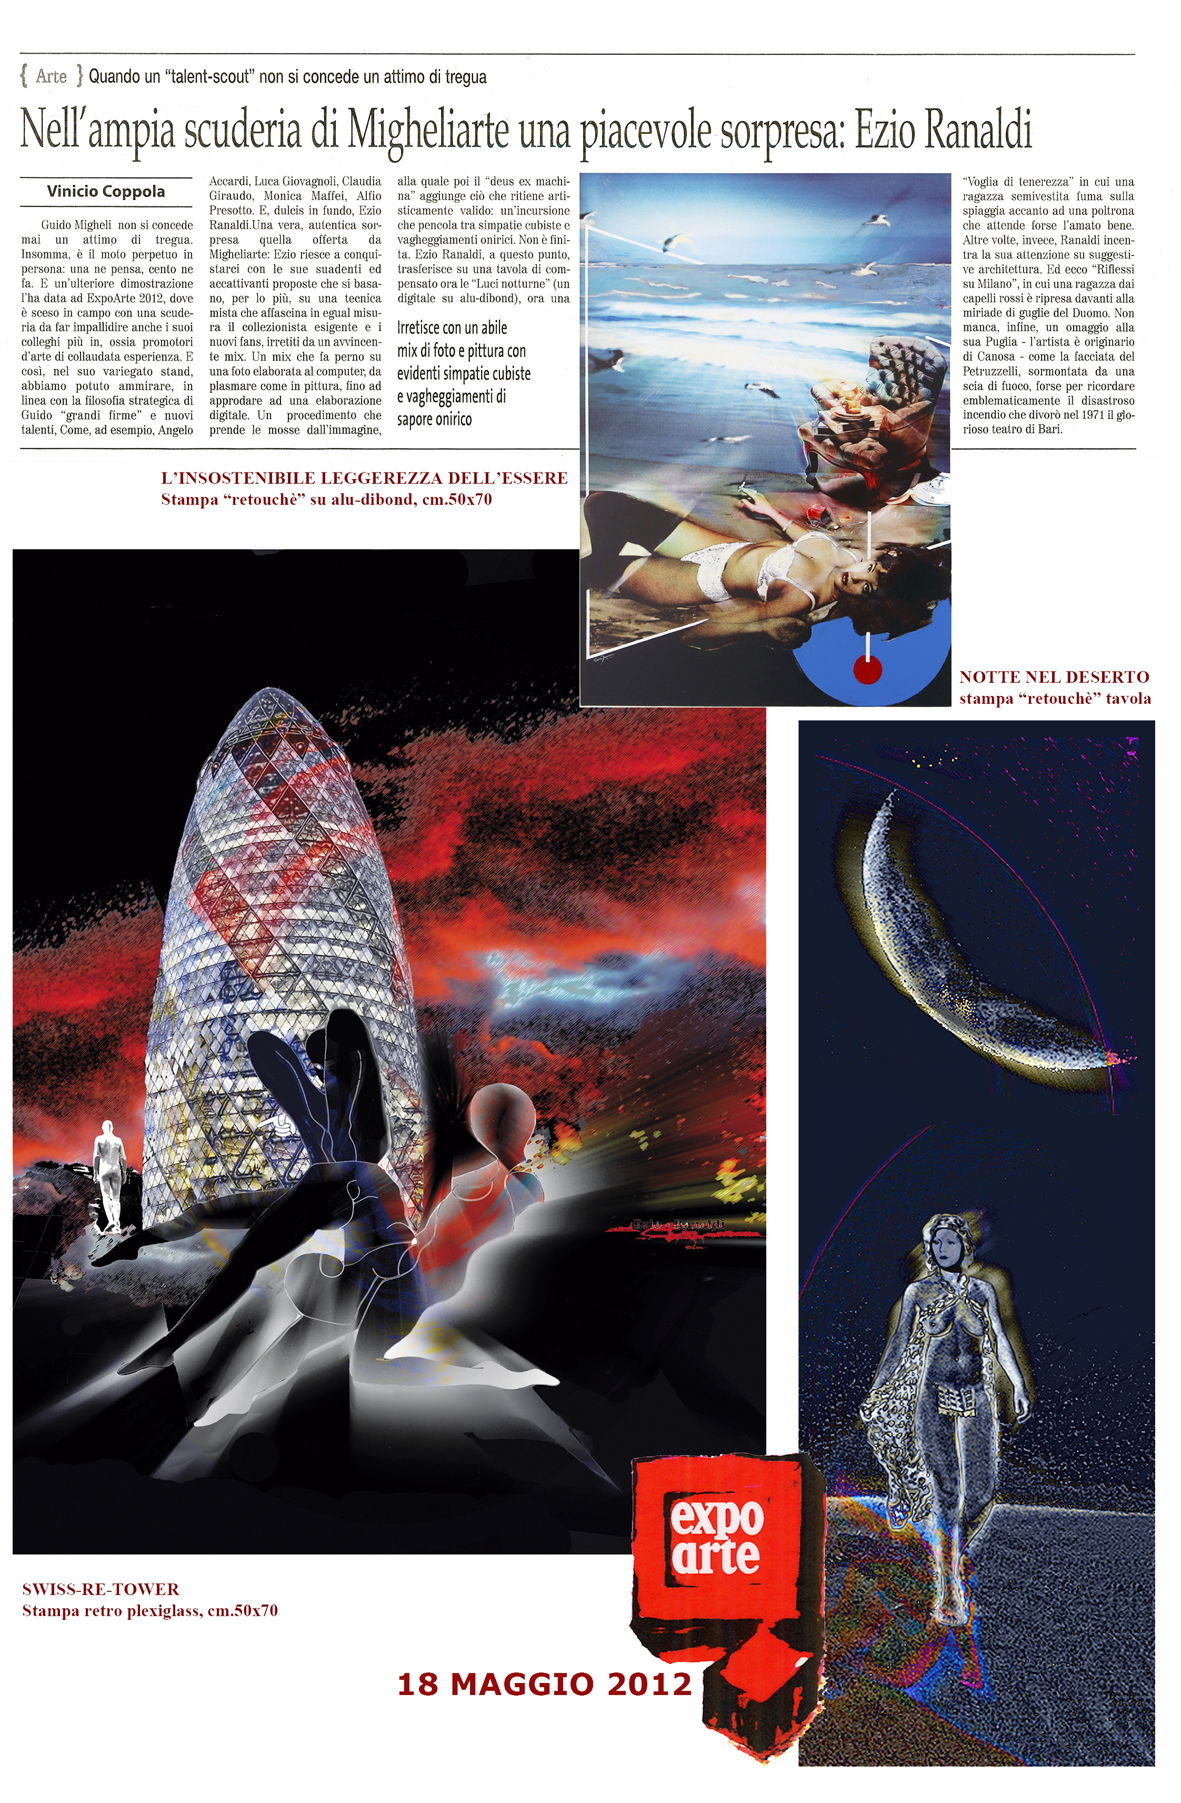 Ezio Ranaldi – expo arte 2012 il quotidiano copia